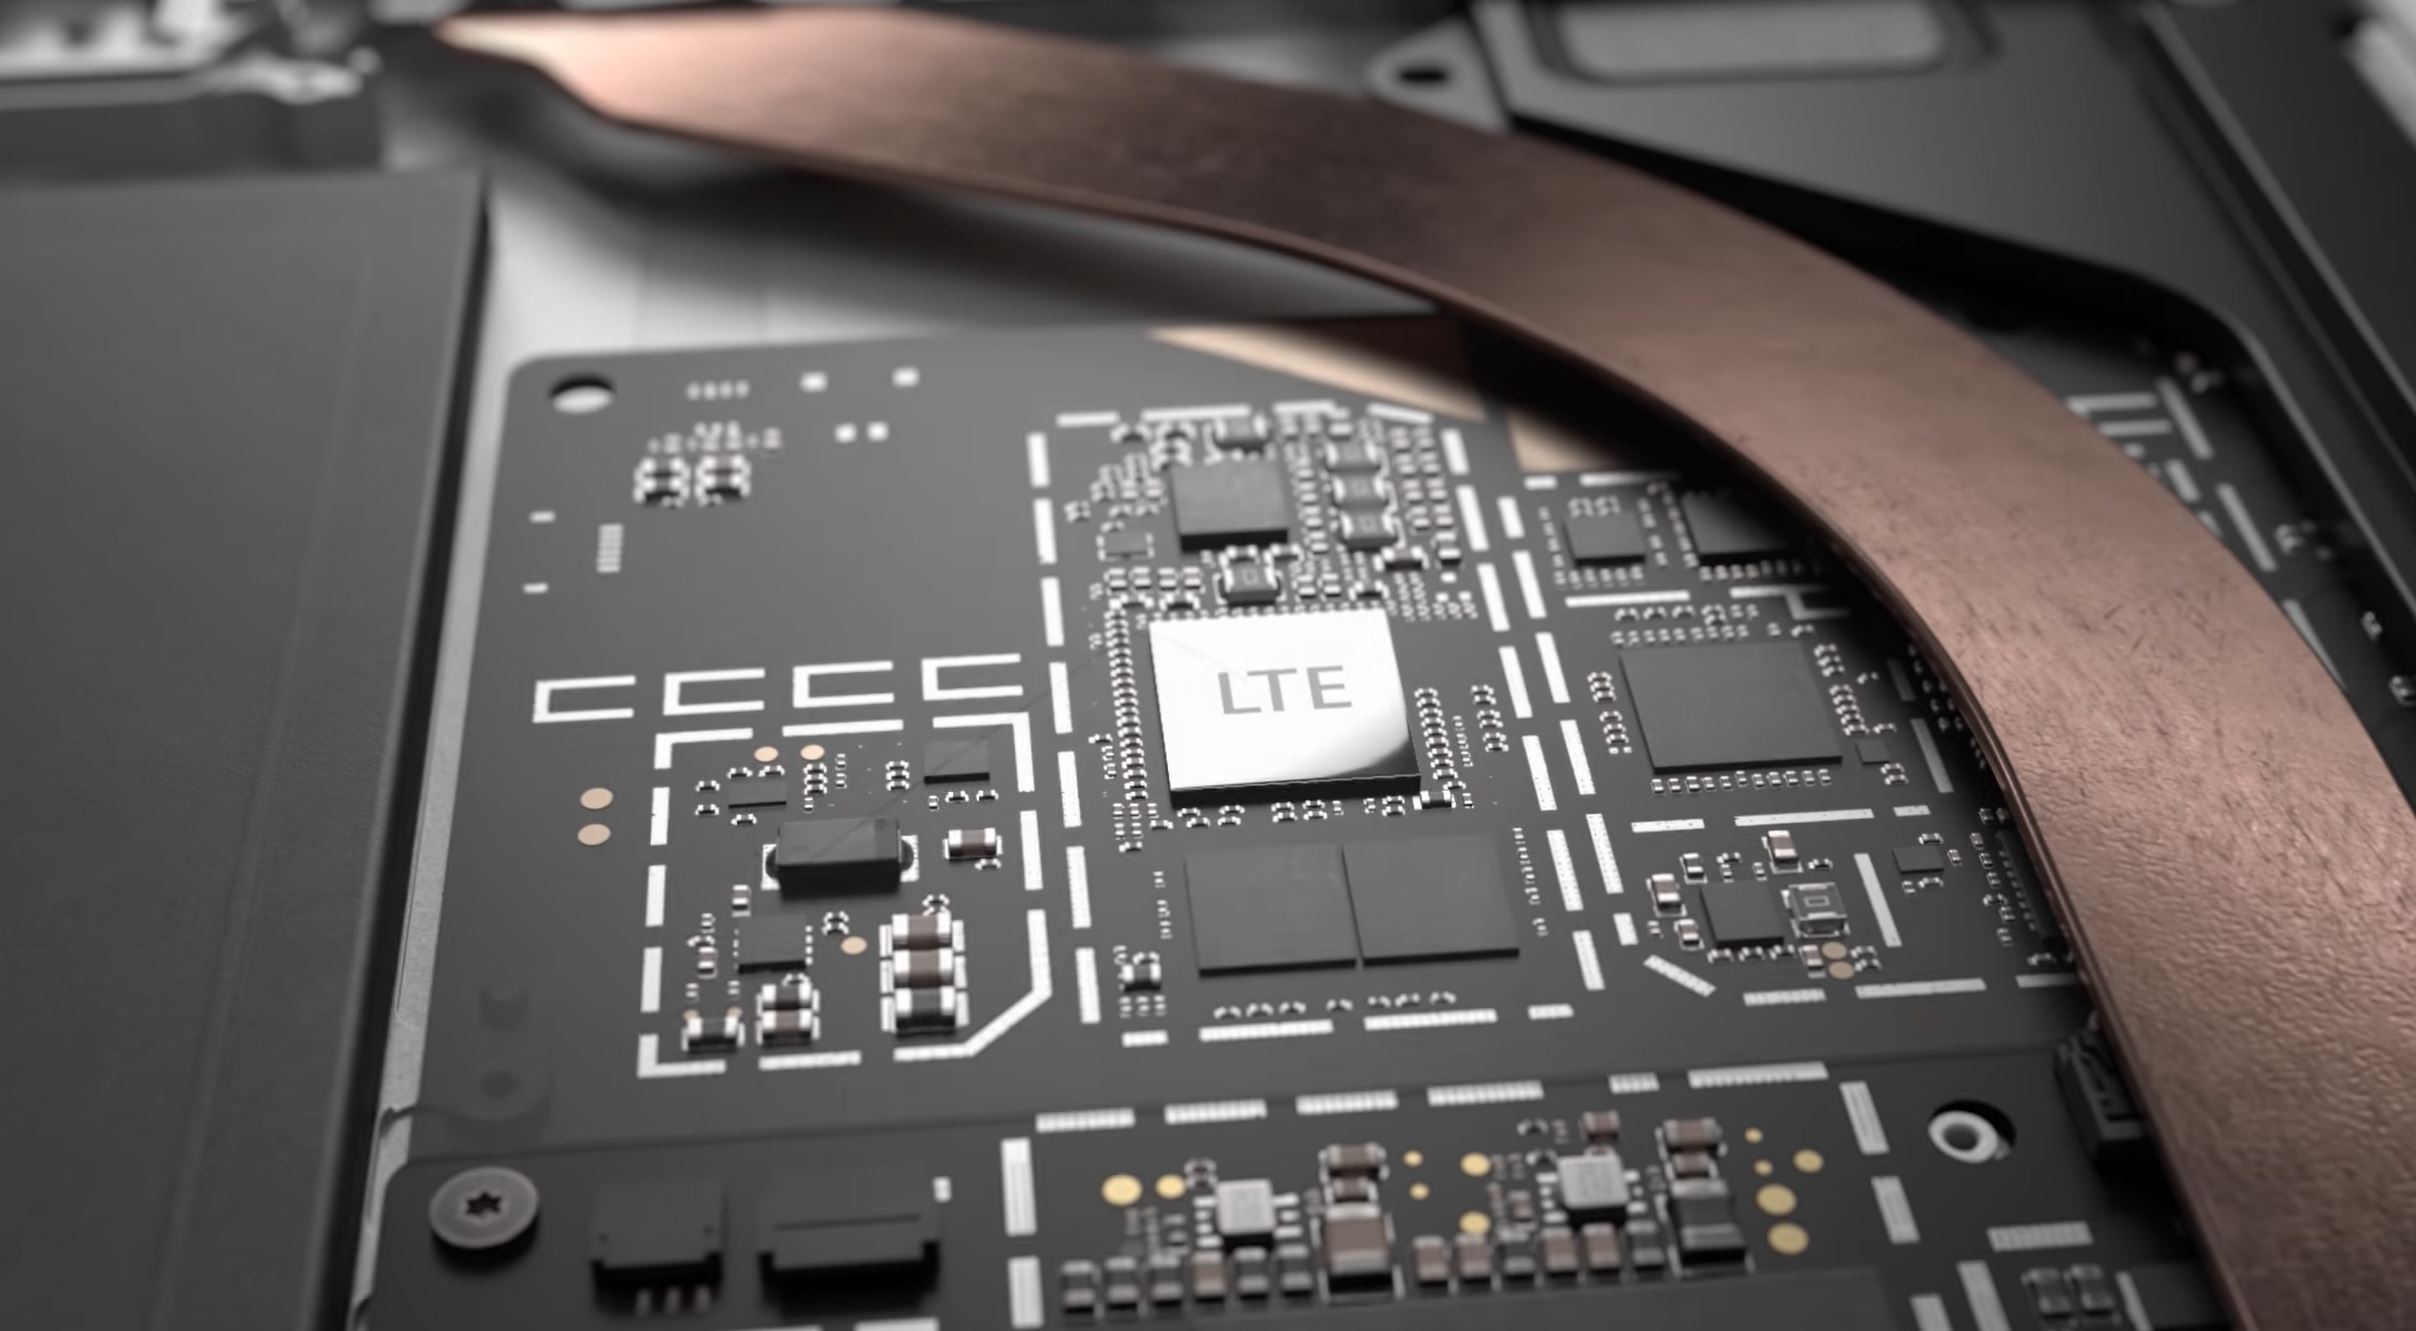 تحلیلی بر عرضه نسخه LTE سرفیس پرو؛ عرضه نسخه LTE سرفیس نشان از چیست؟